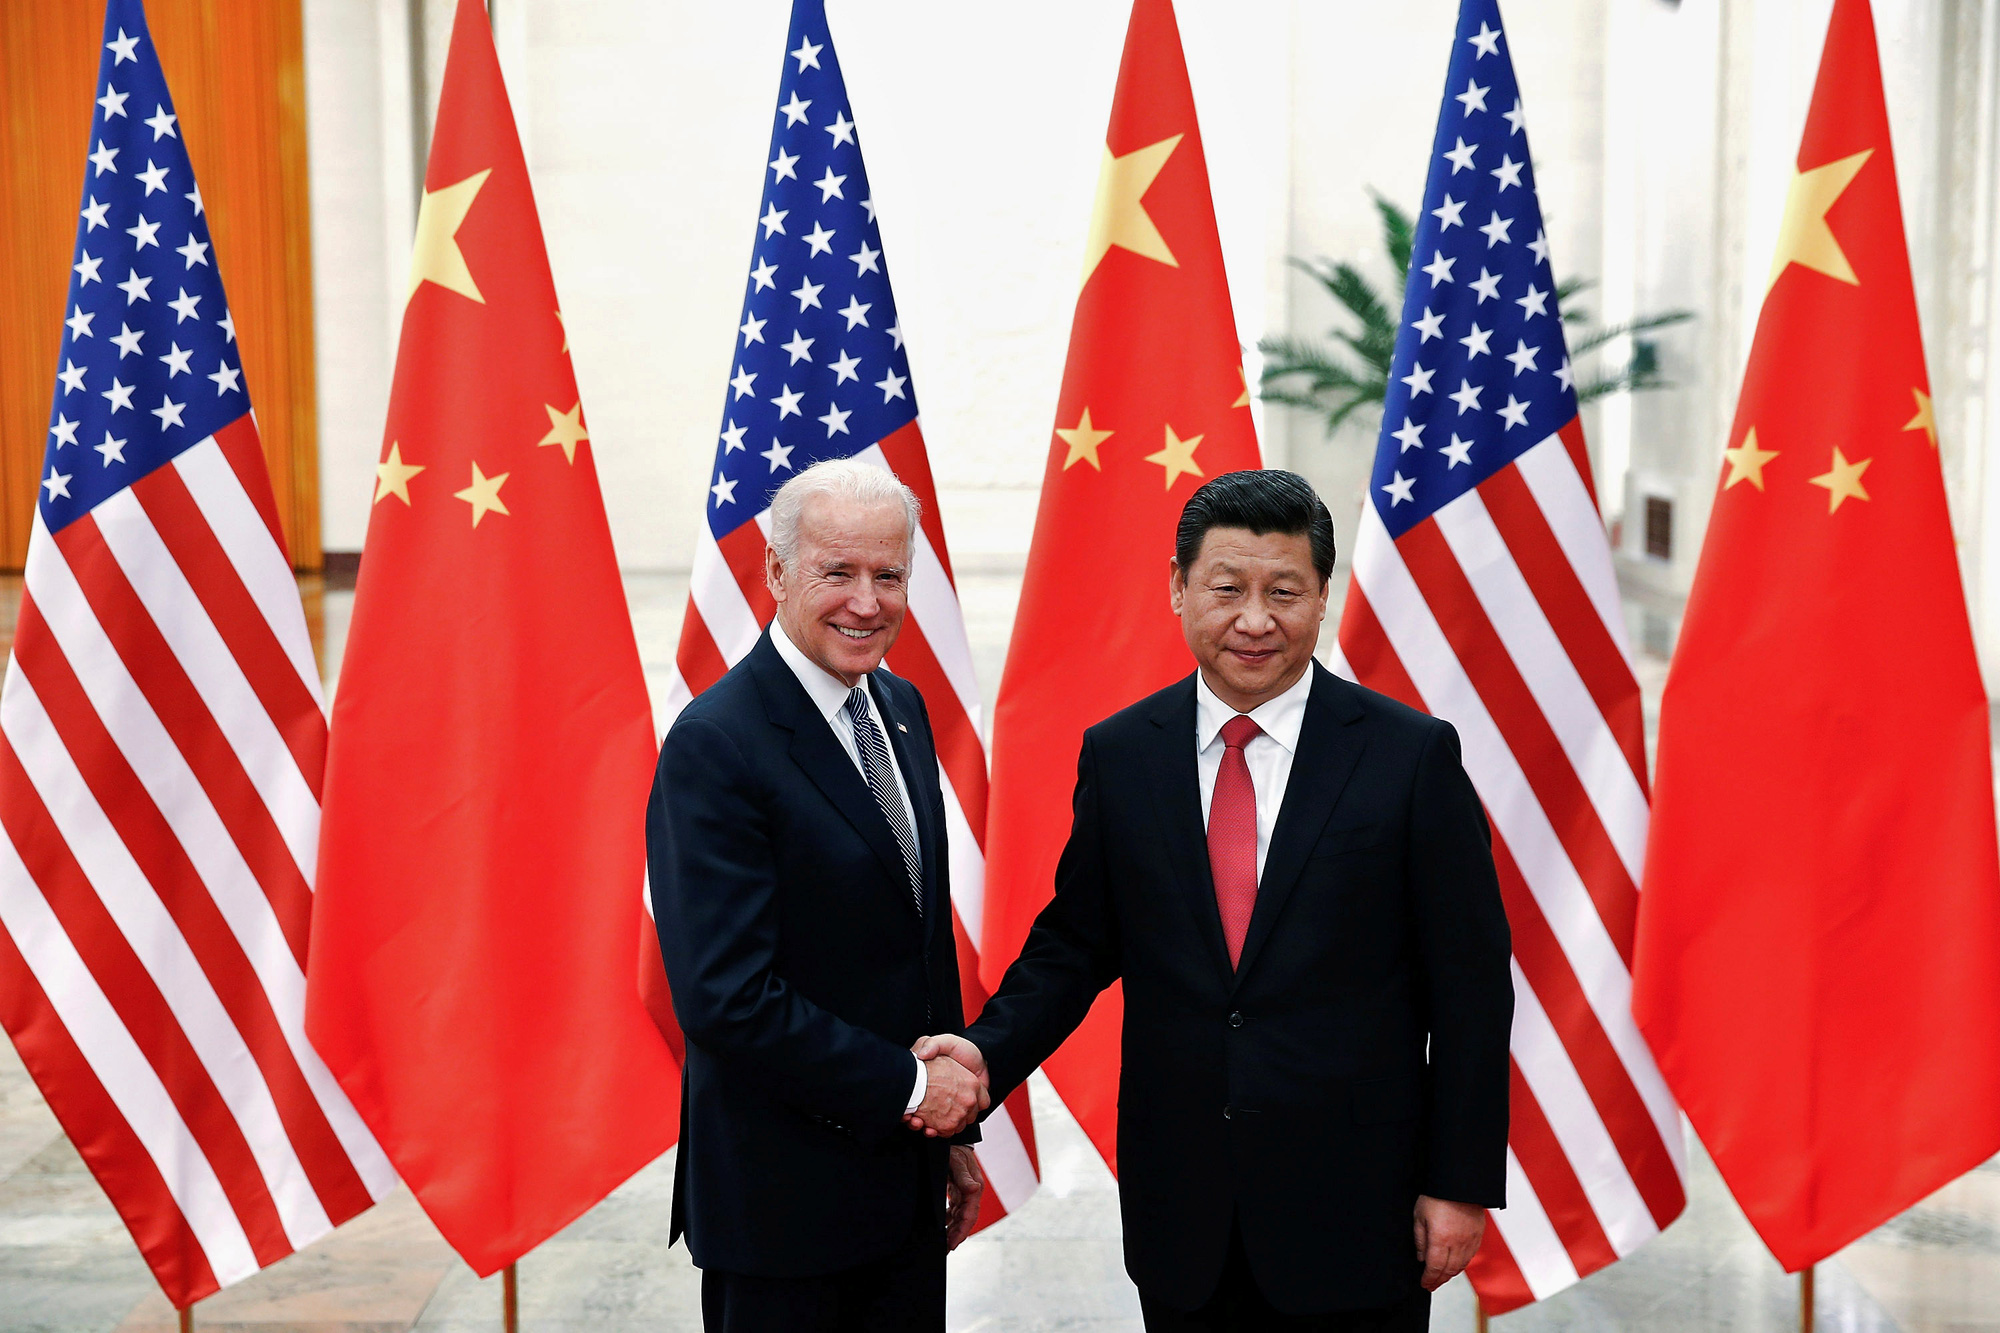 Tin cậy Mỹ-Trung Quốc: Mỹ và Trung Quốc đã ký kết thỏa thuận về thương mại trong khi đàm phán vẫn đang tiếp diễn. Việc ký kết thỏa thuận này giúp cho sự tin tưởng giữa hai nước được củng cố và tạo ra những cơ hội tăng trưởng kinh tế từ đó.